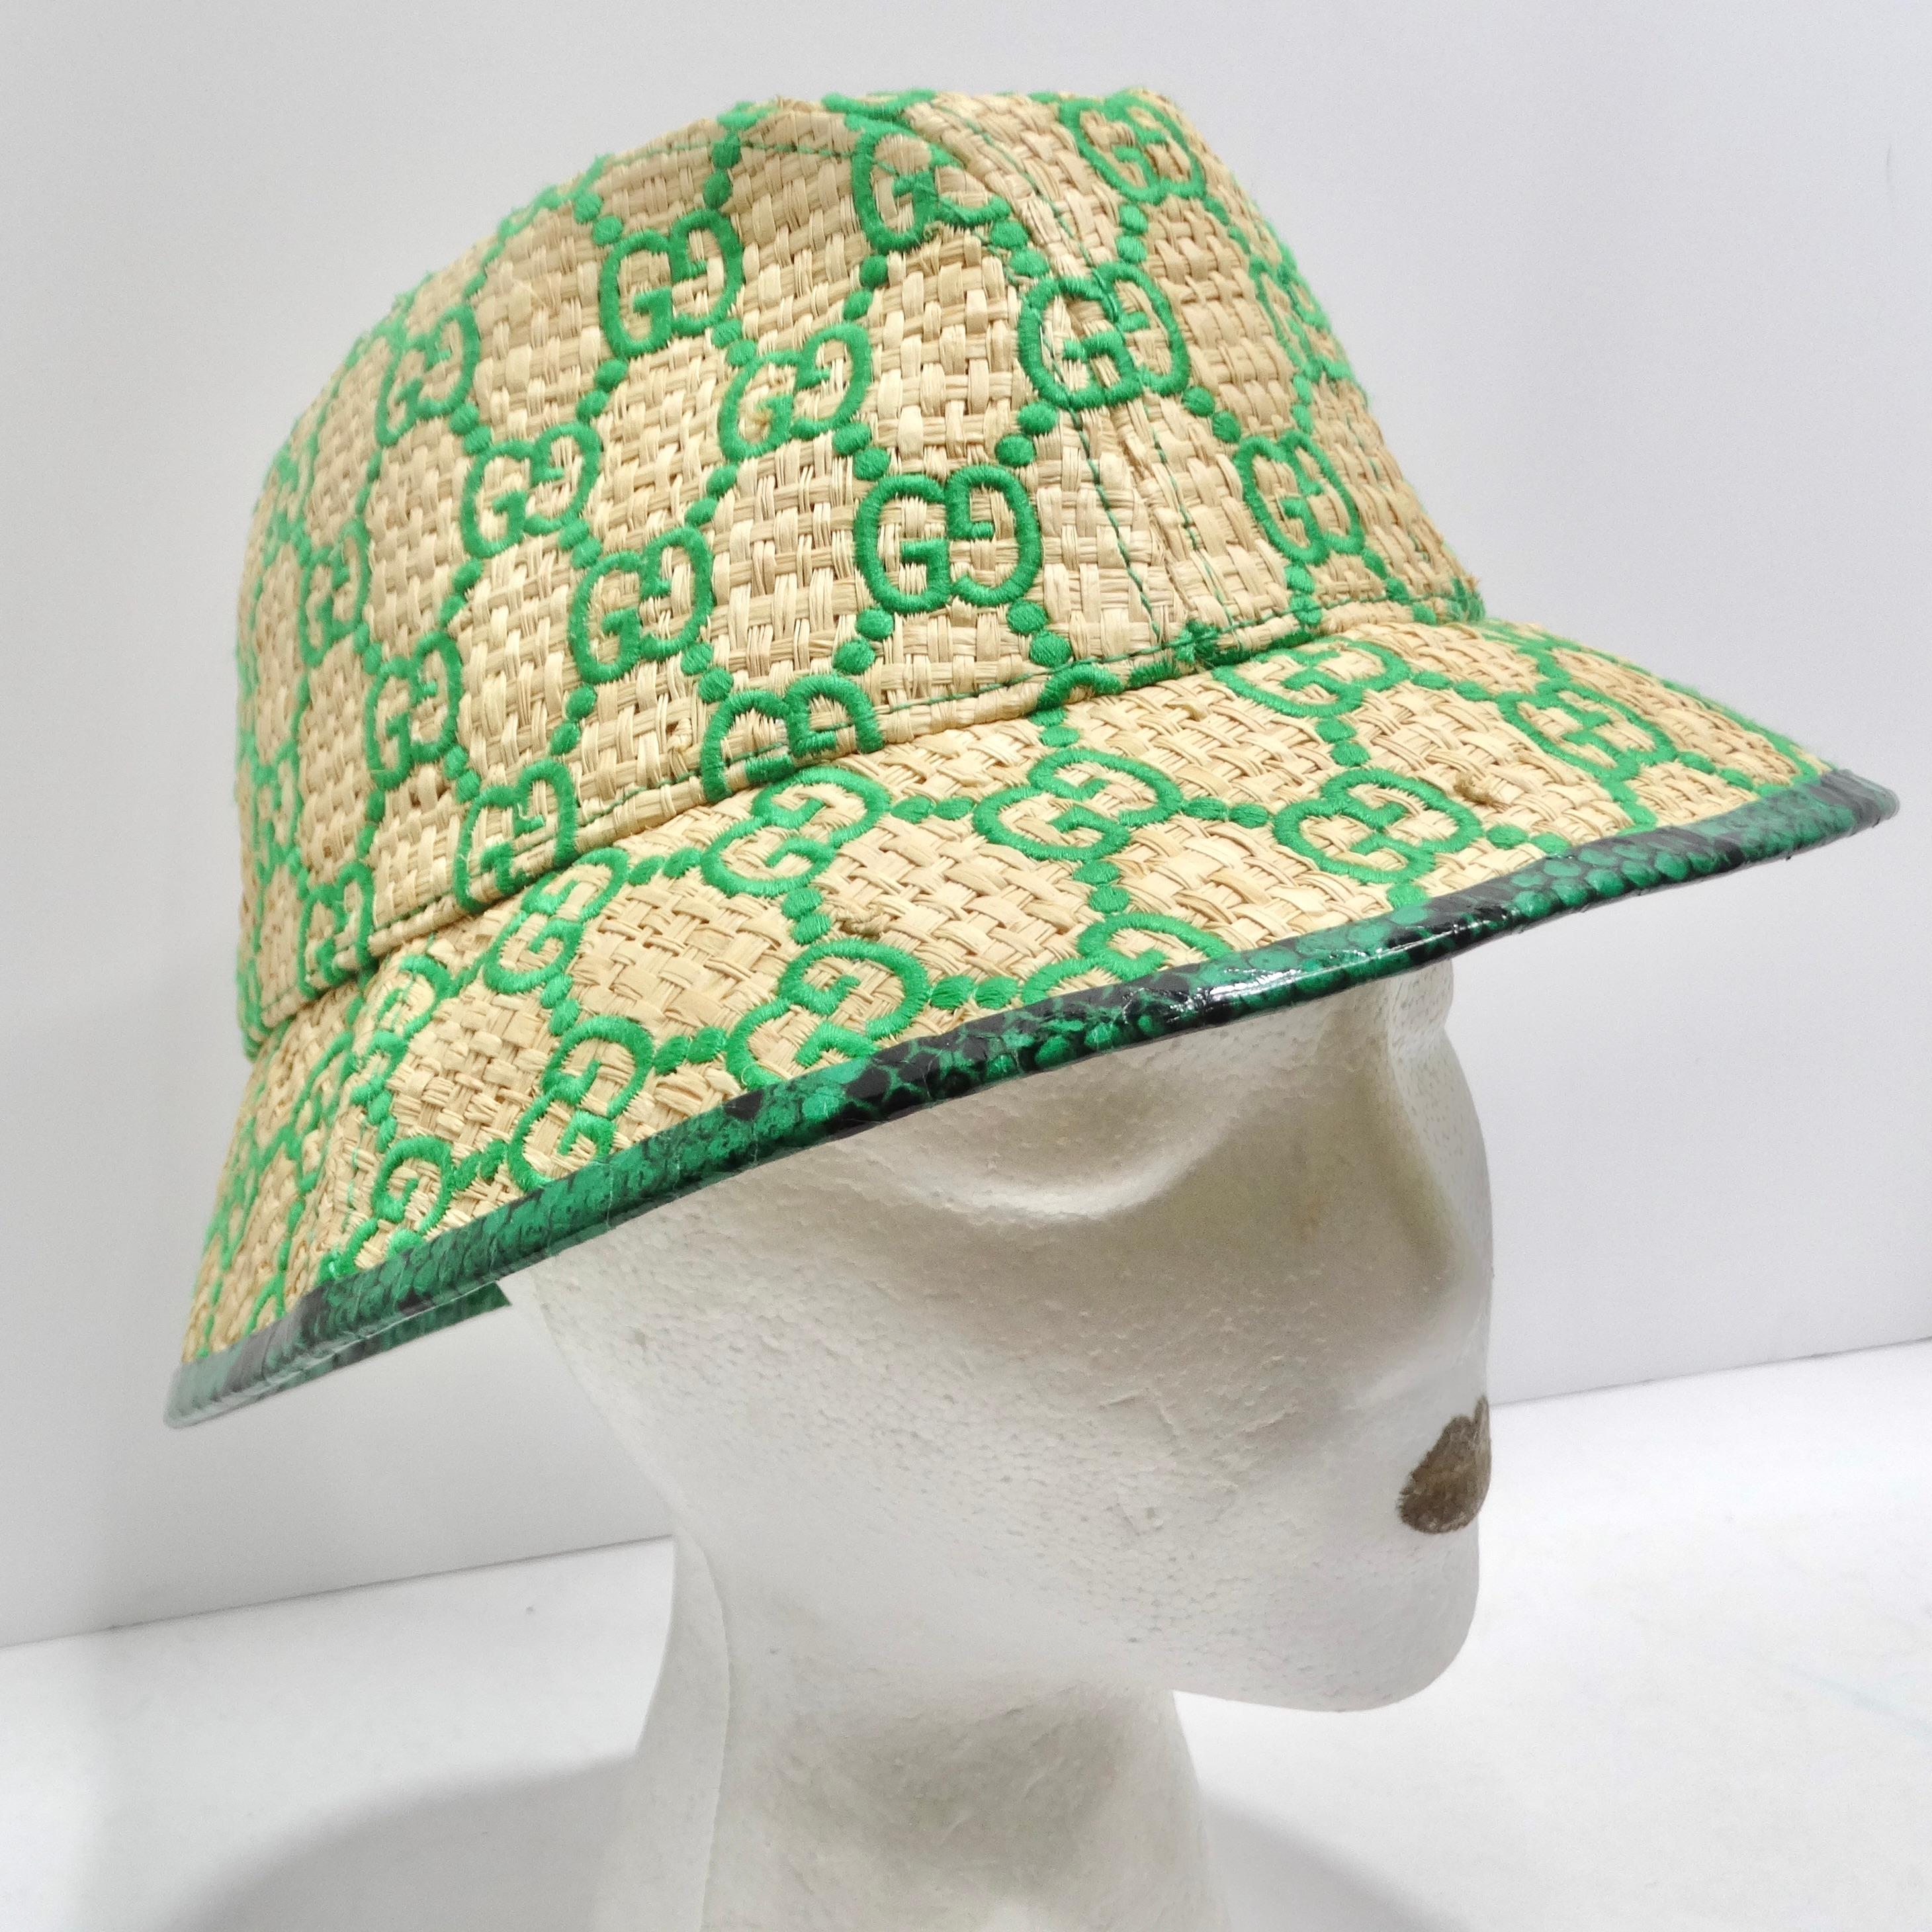 Der Gucci Raffia Elaphe GG Monogram Embroidered Wide Brim Hat ist ein Statement-Stück, das Stil, Luxus und den unverwechselbaren Charme von Gucci nahtlos miteinander verbindet. Dieser Hut ist nicht nur ein Accessoire, sondern ein Gesprächsanlass und